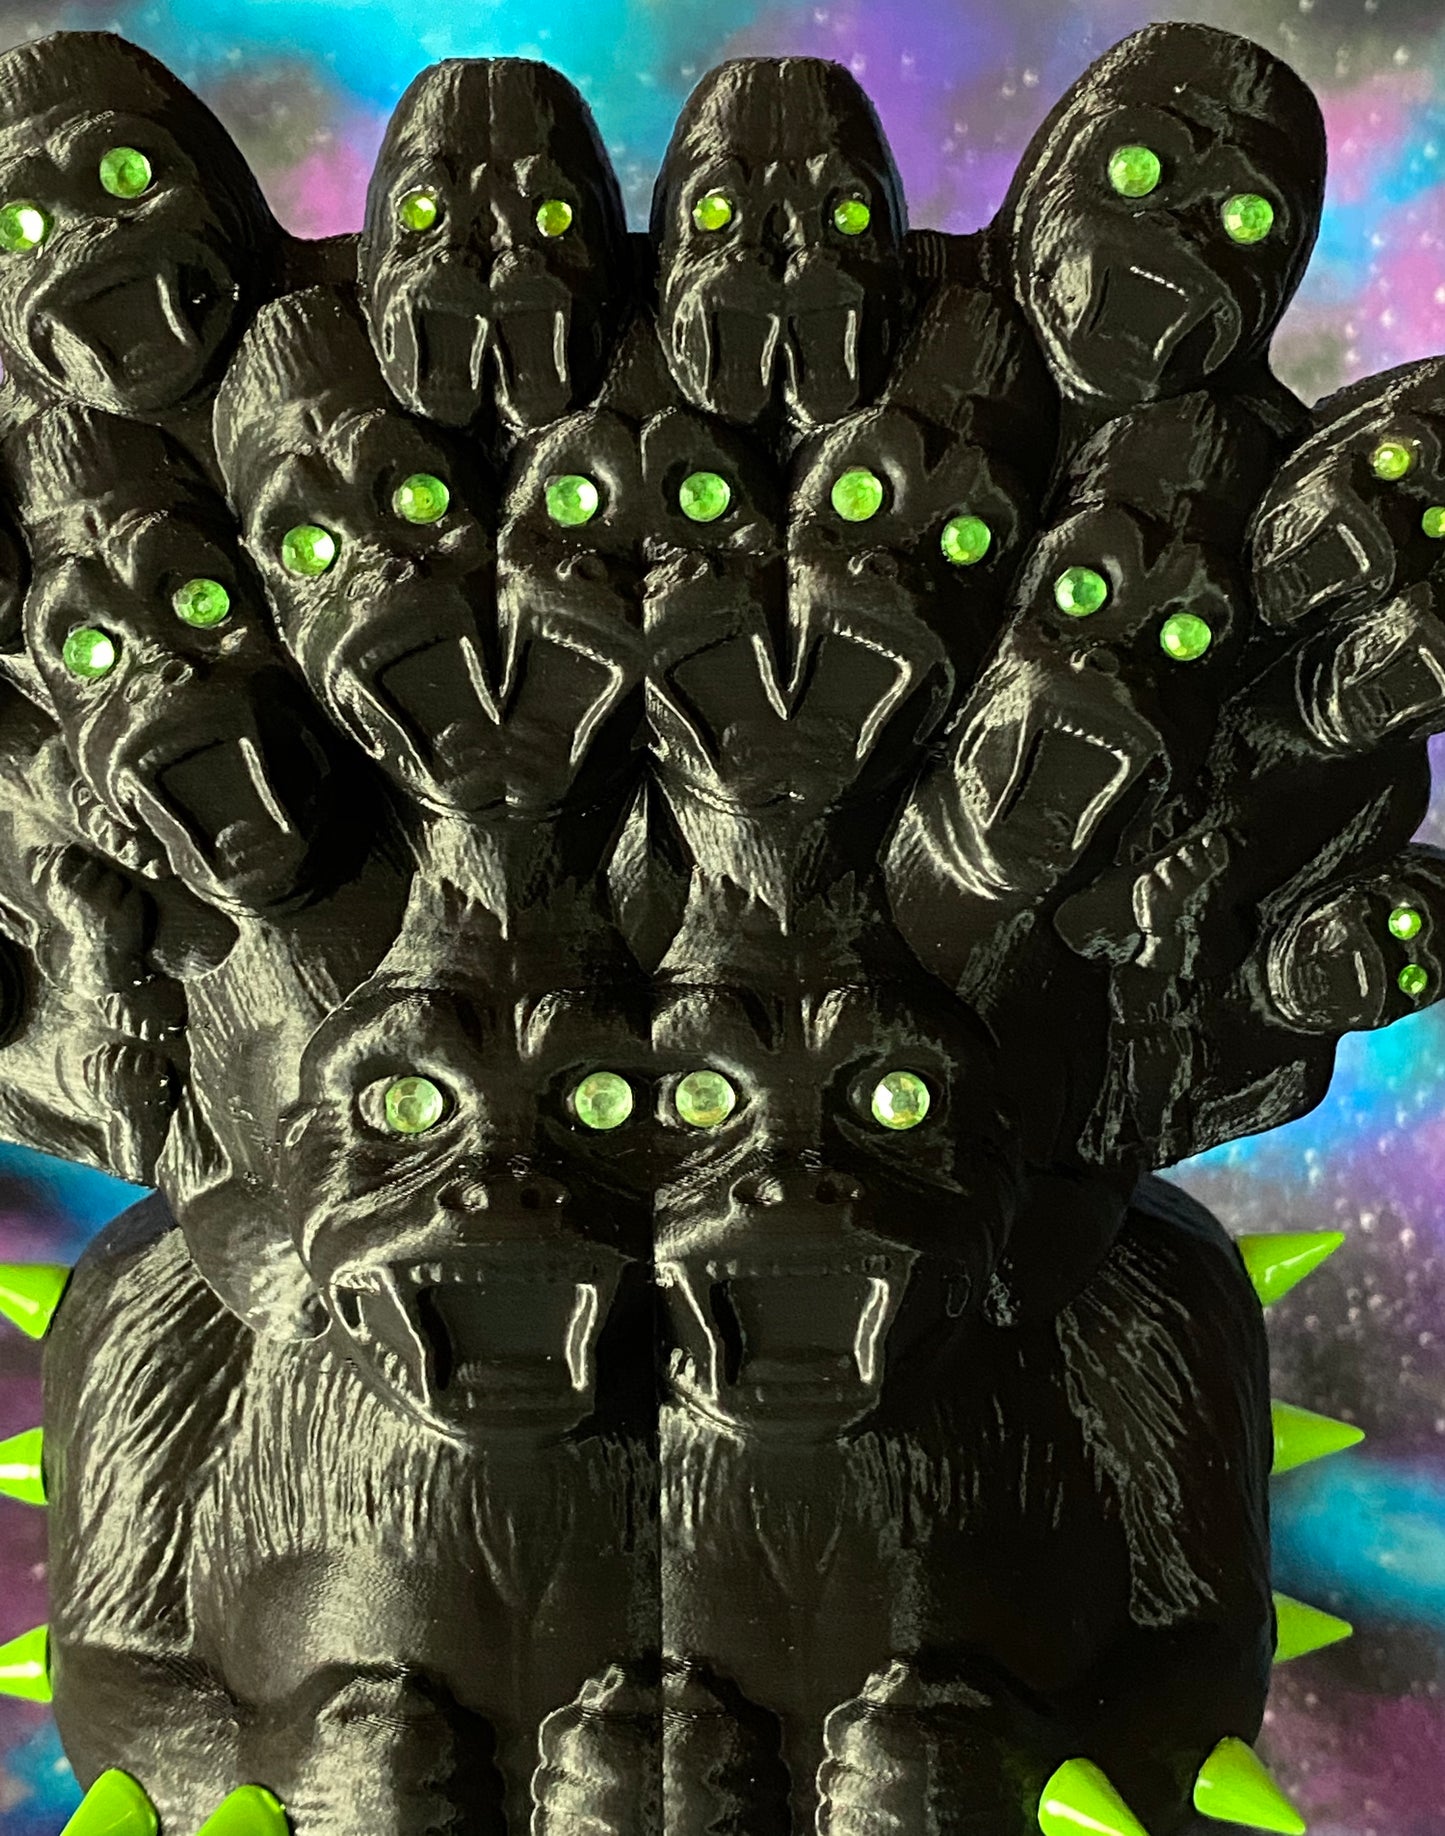 Mega God Lord Ape Freak: Black and Green